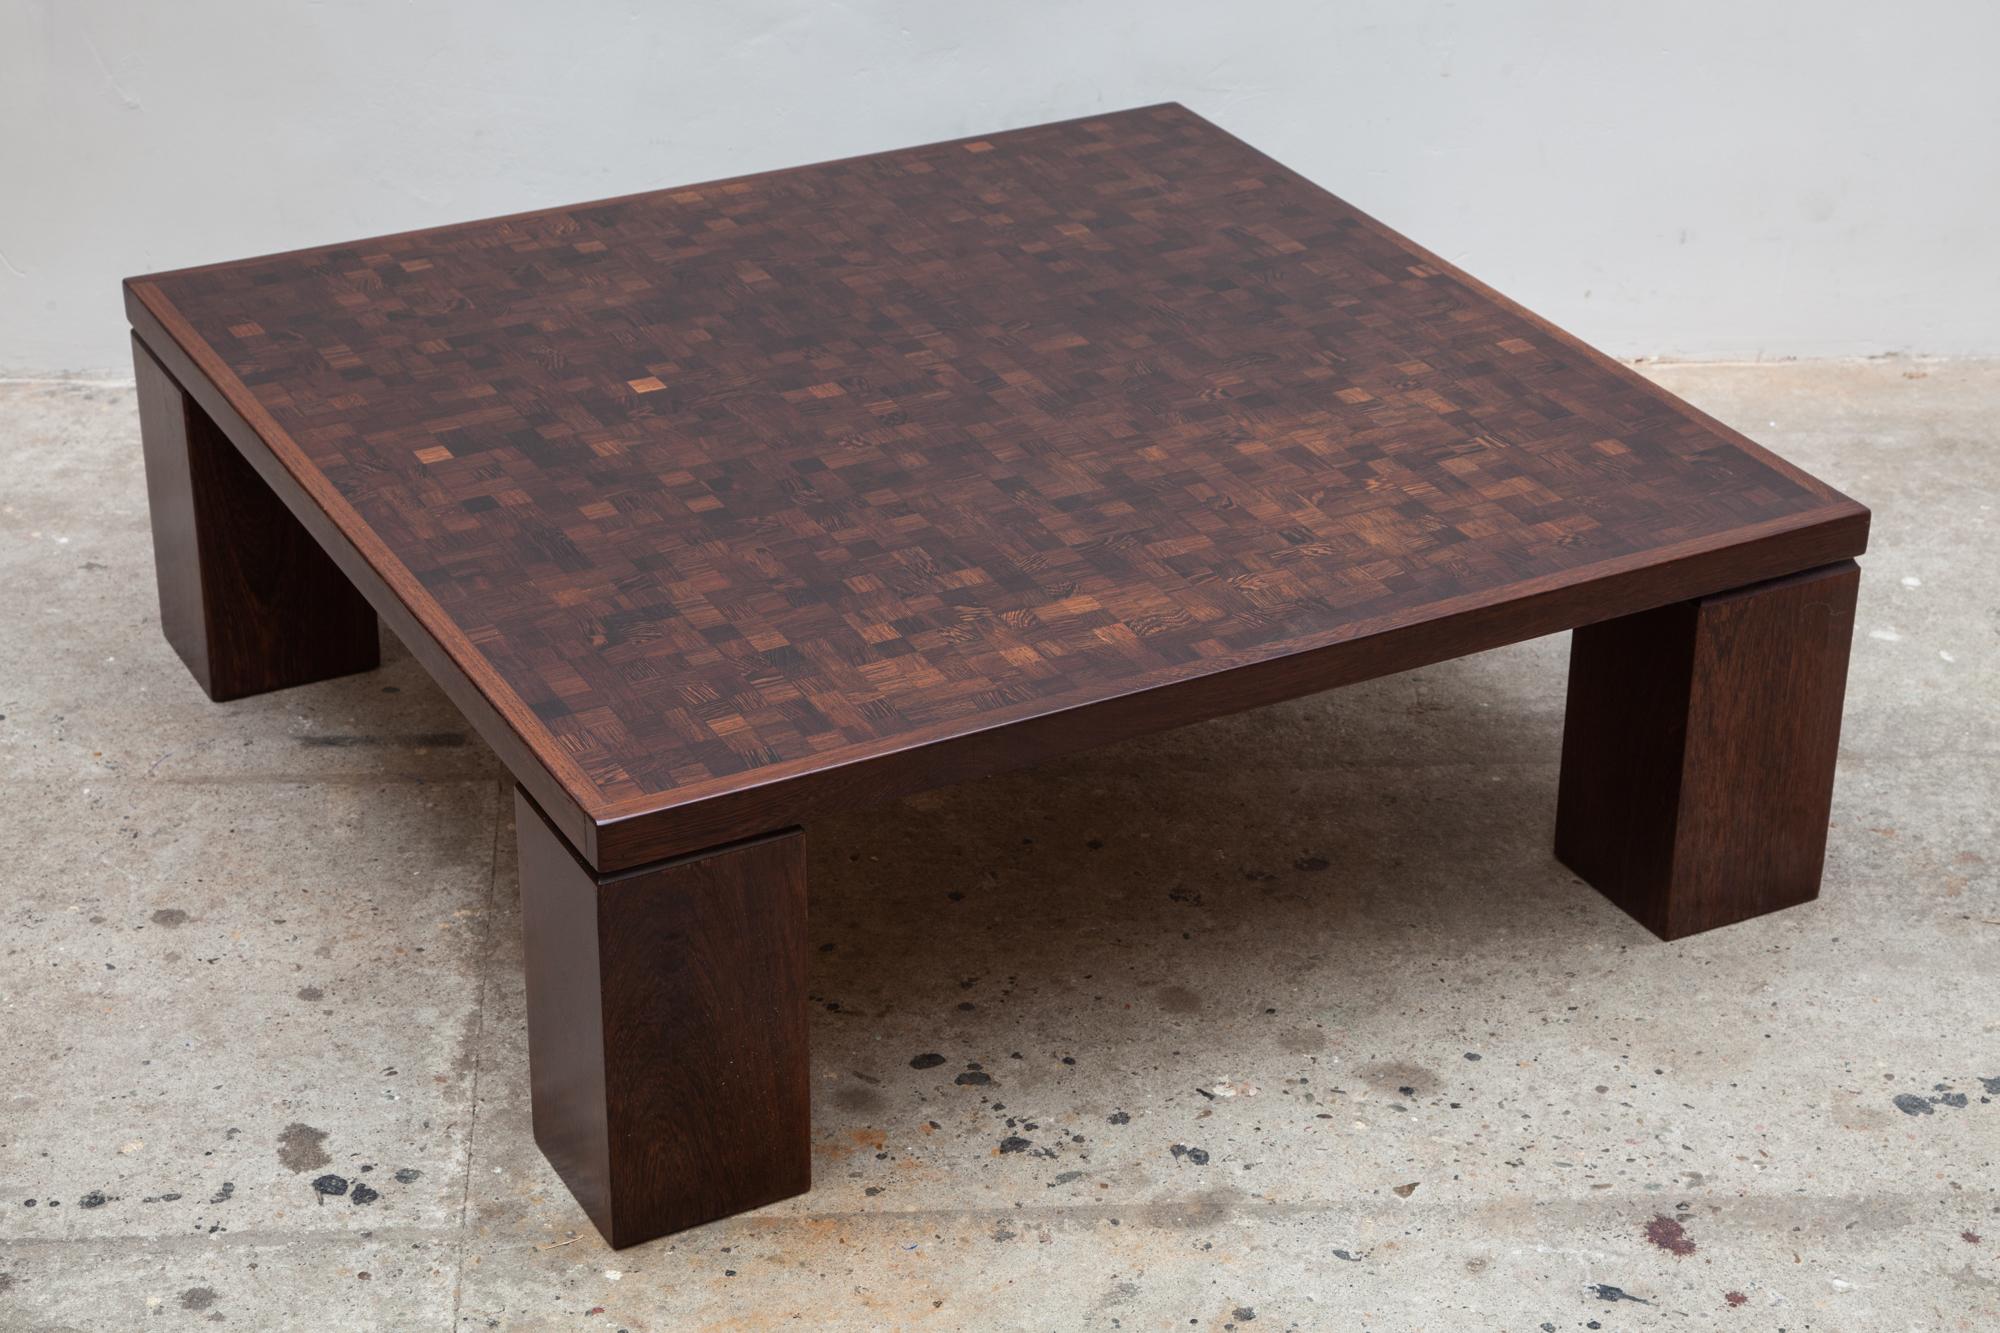 1970er Tisch ist ein Beispiel für die große Handwerkskunst von Rolf Middelboe für Tranekaer Möbel, gut gestaltete Basis und eine hohe Qualität-Kaffee-Tisch mit Hirnholzplatte Marqueterie in Wenge lackiert.
Das komplexe und organische Muster, das